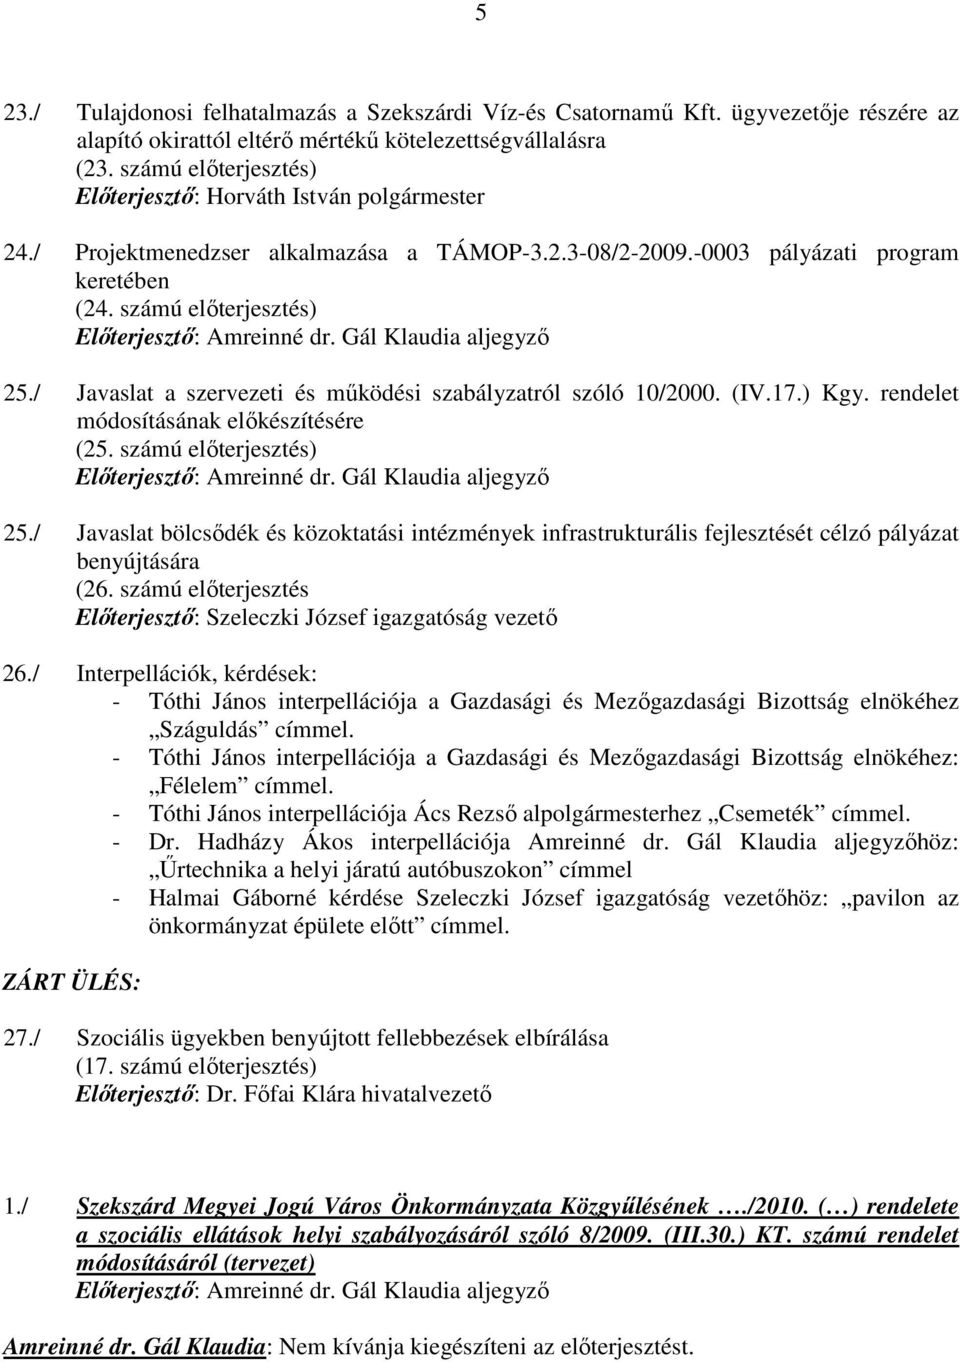 / Javaslat a szervezeti és mőködési szabályzatról szóló 10/2000. (IV.17.) Kgy. rendelet módosításának elıkészítésére (25. számú elıterjesztés) Elıterjesztı: Amreinné dr. Gál Klaudia aljegyzı 25.